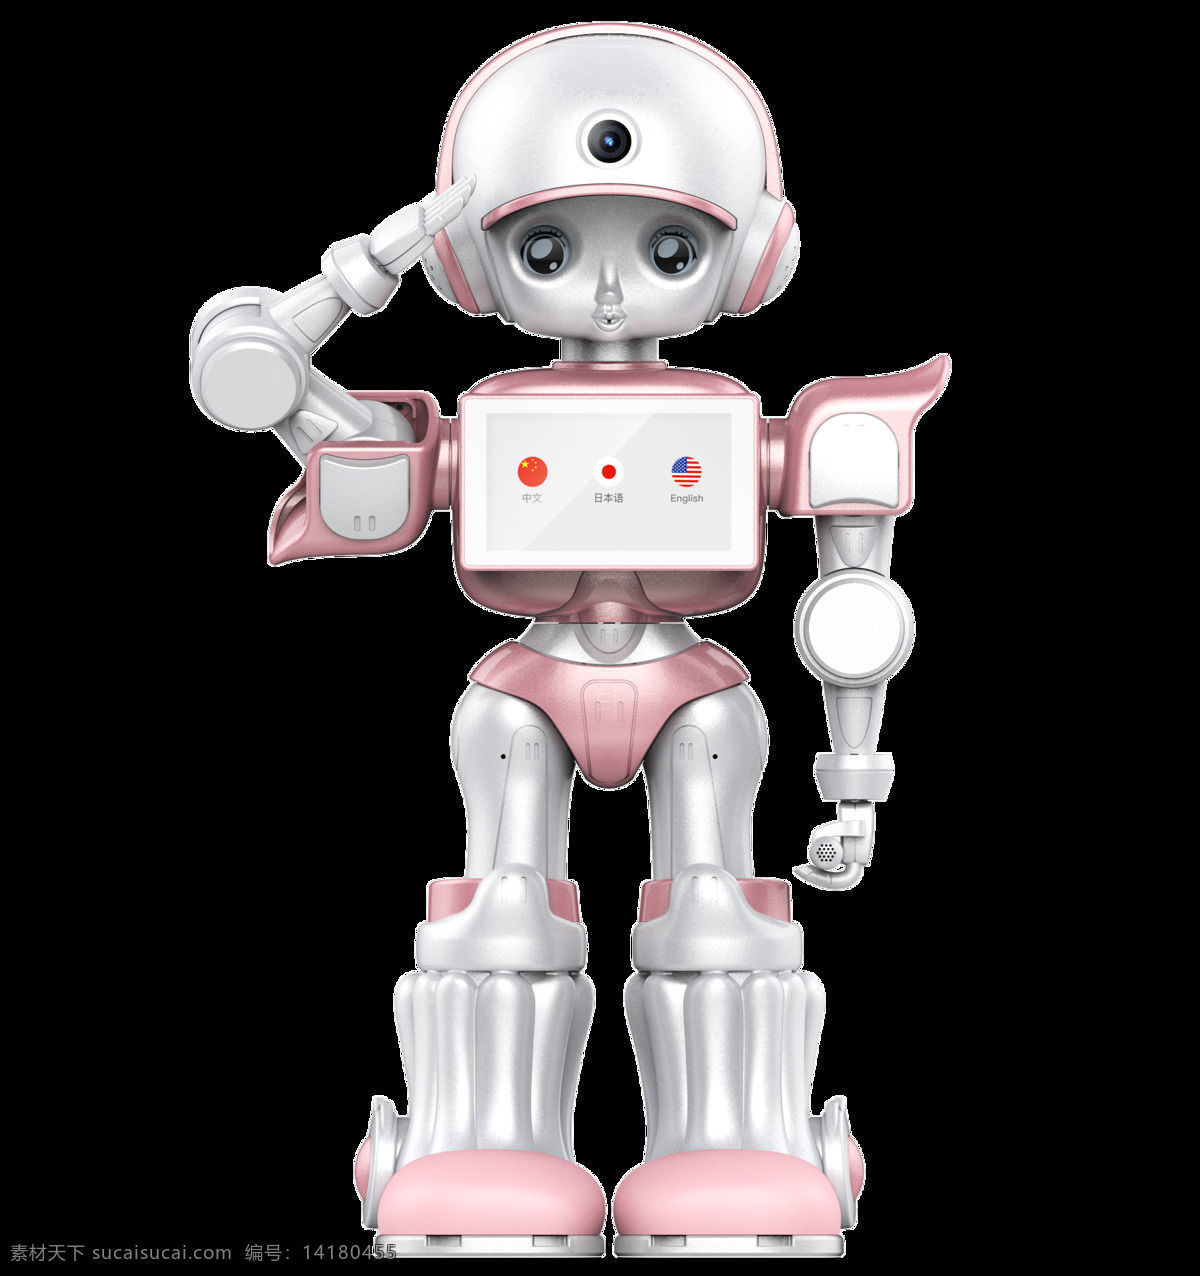 艾 唯 尔 点 餐 机器人 餐厅机器人 点餐机器人 服务机器人 机器人餐厅 小艾机器人